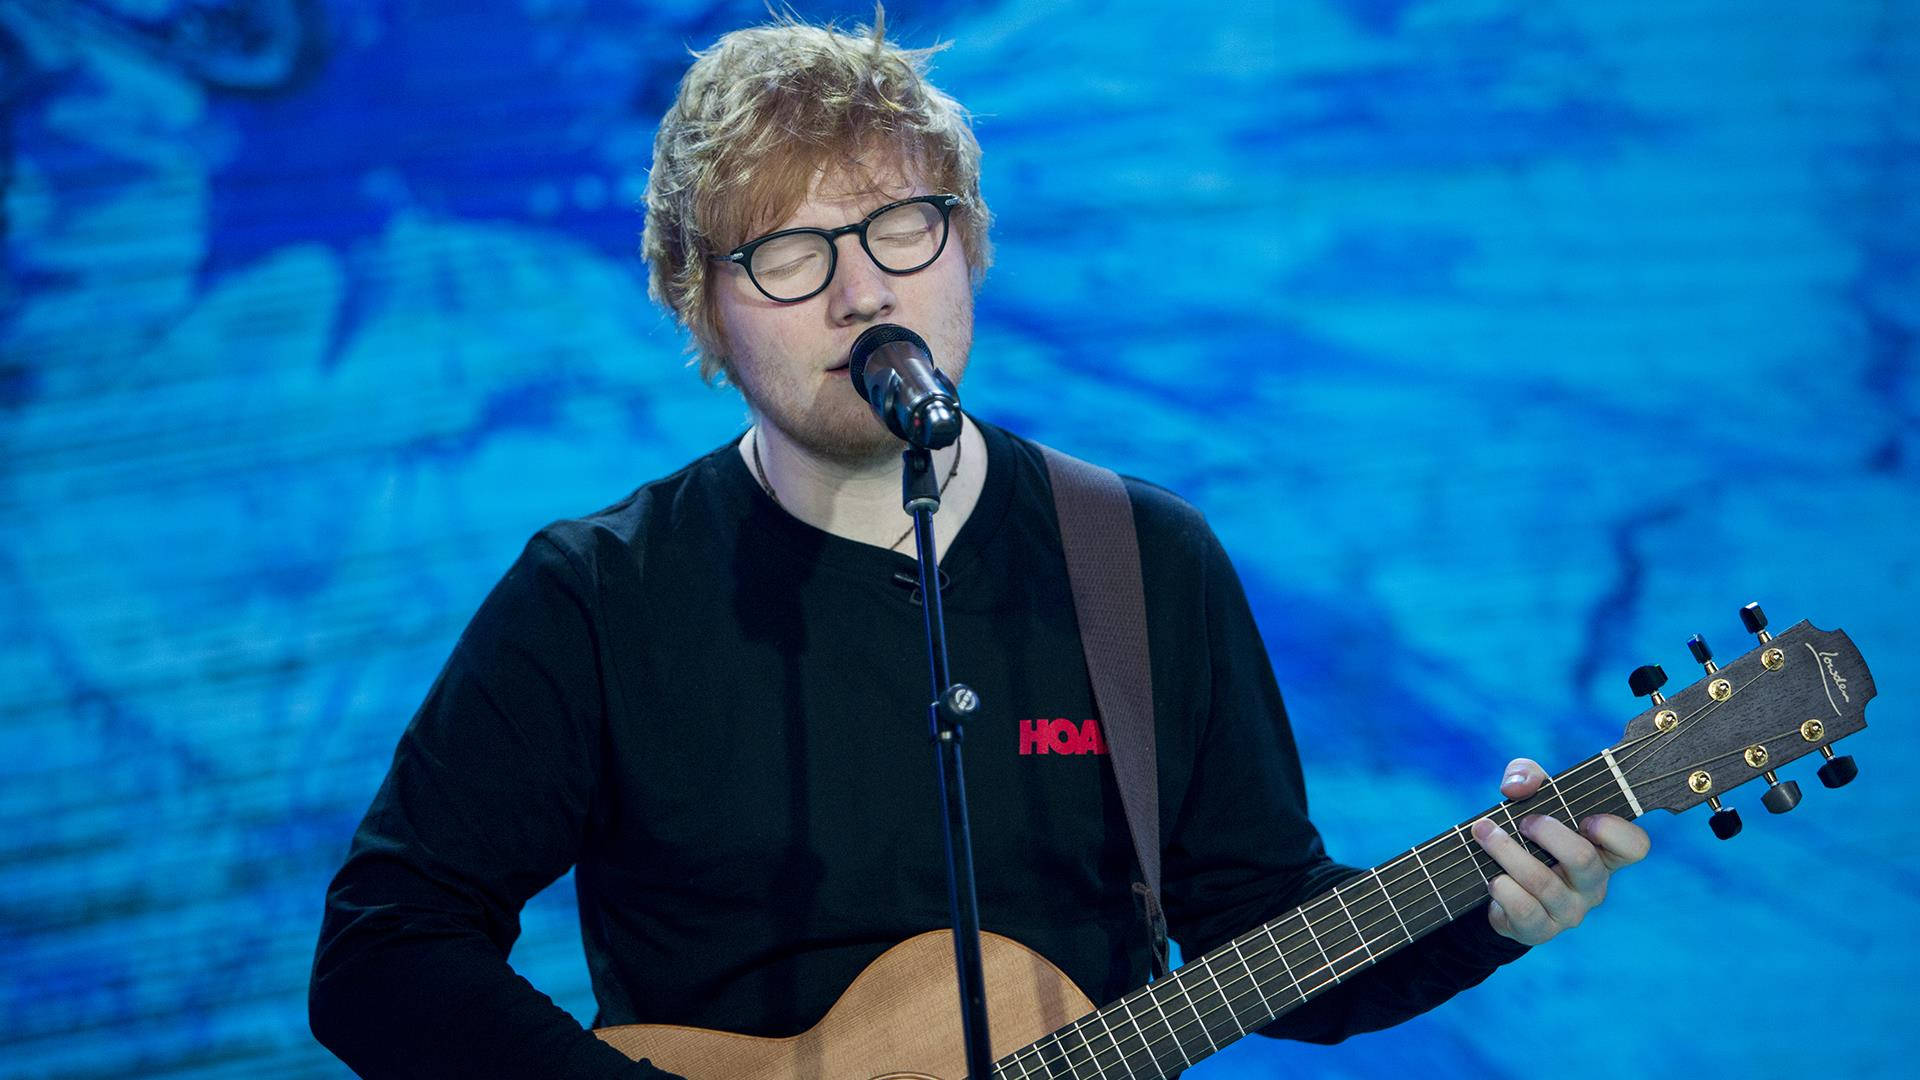 Ed Sheeran Singing Live Background